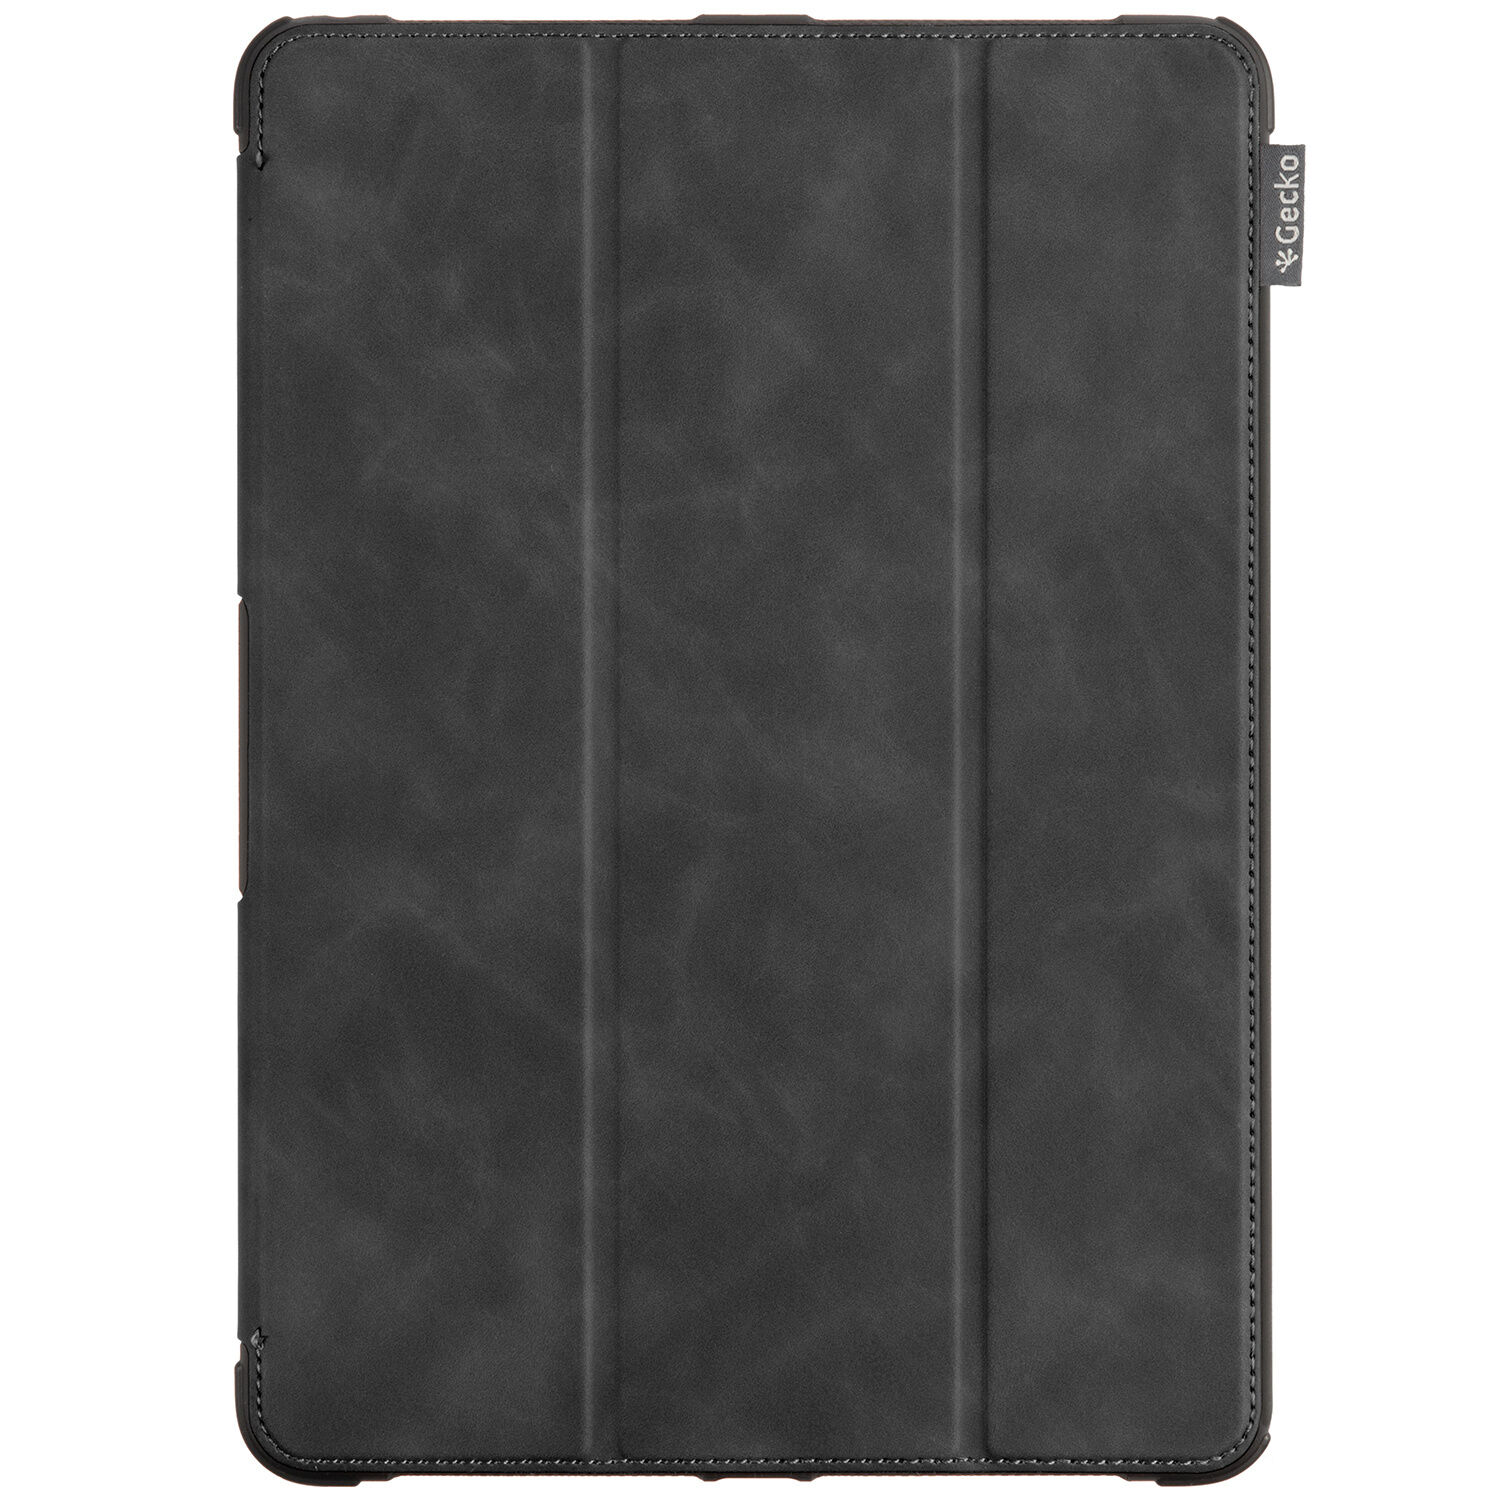 Gecko Covers Etui tablette à rabat Rugged pour l'iPad 10.2 (2019 / 2020) - Noir